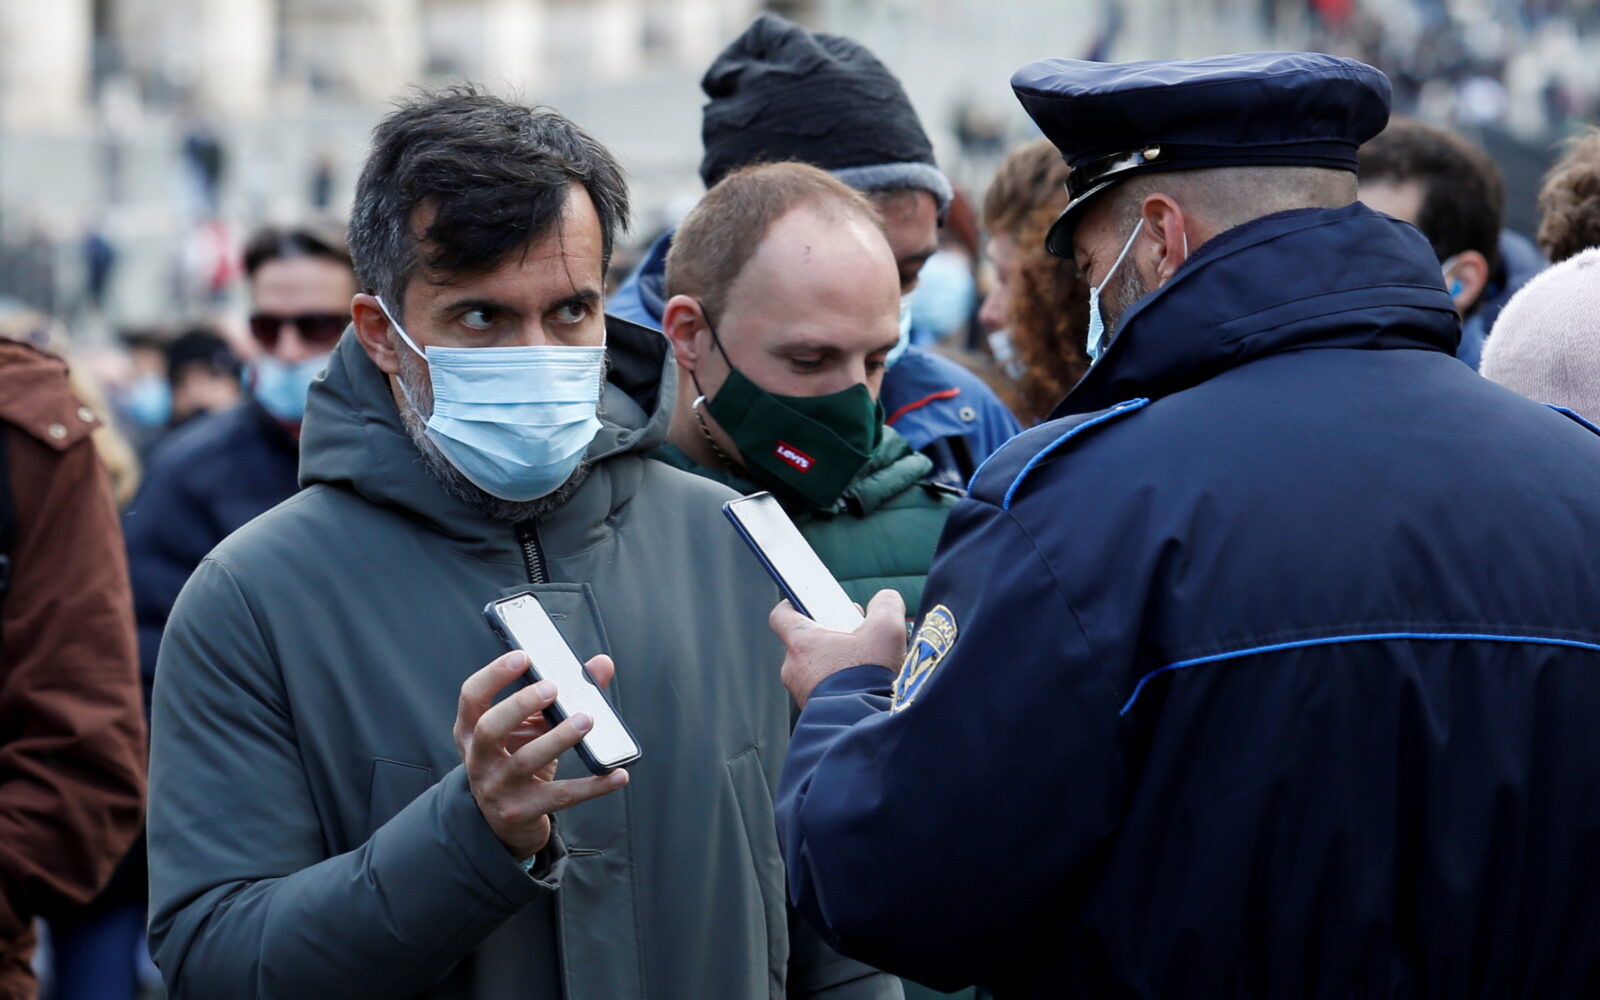 COVID-19 health pass checks at Roman Forum in Rome